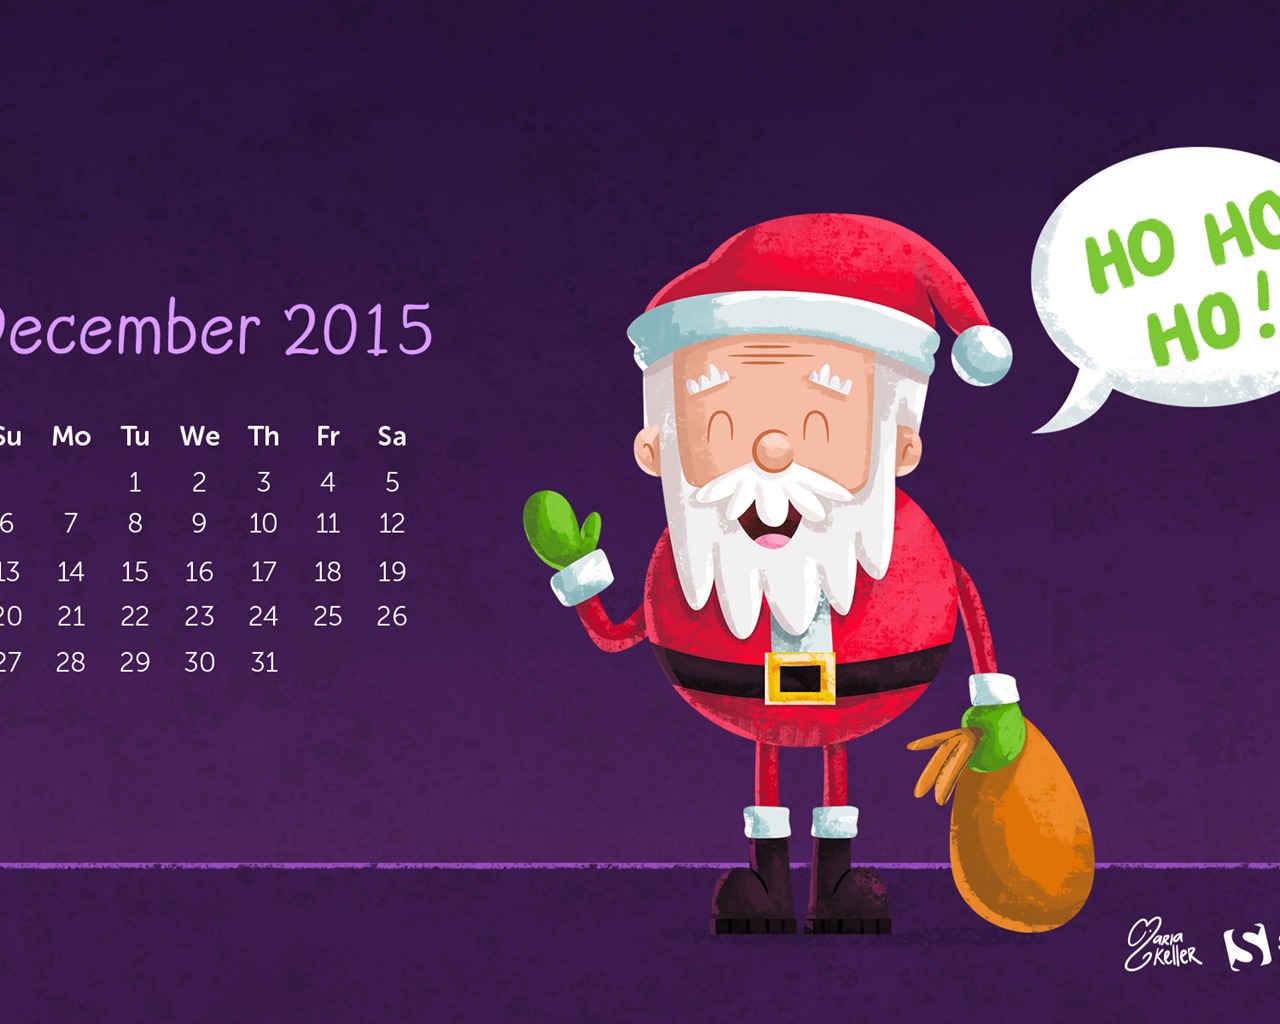 December 2015 Calendar wallpaper (2) #2 - 1280x1024